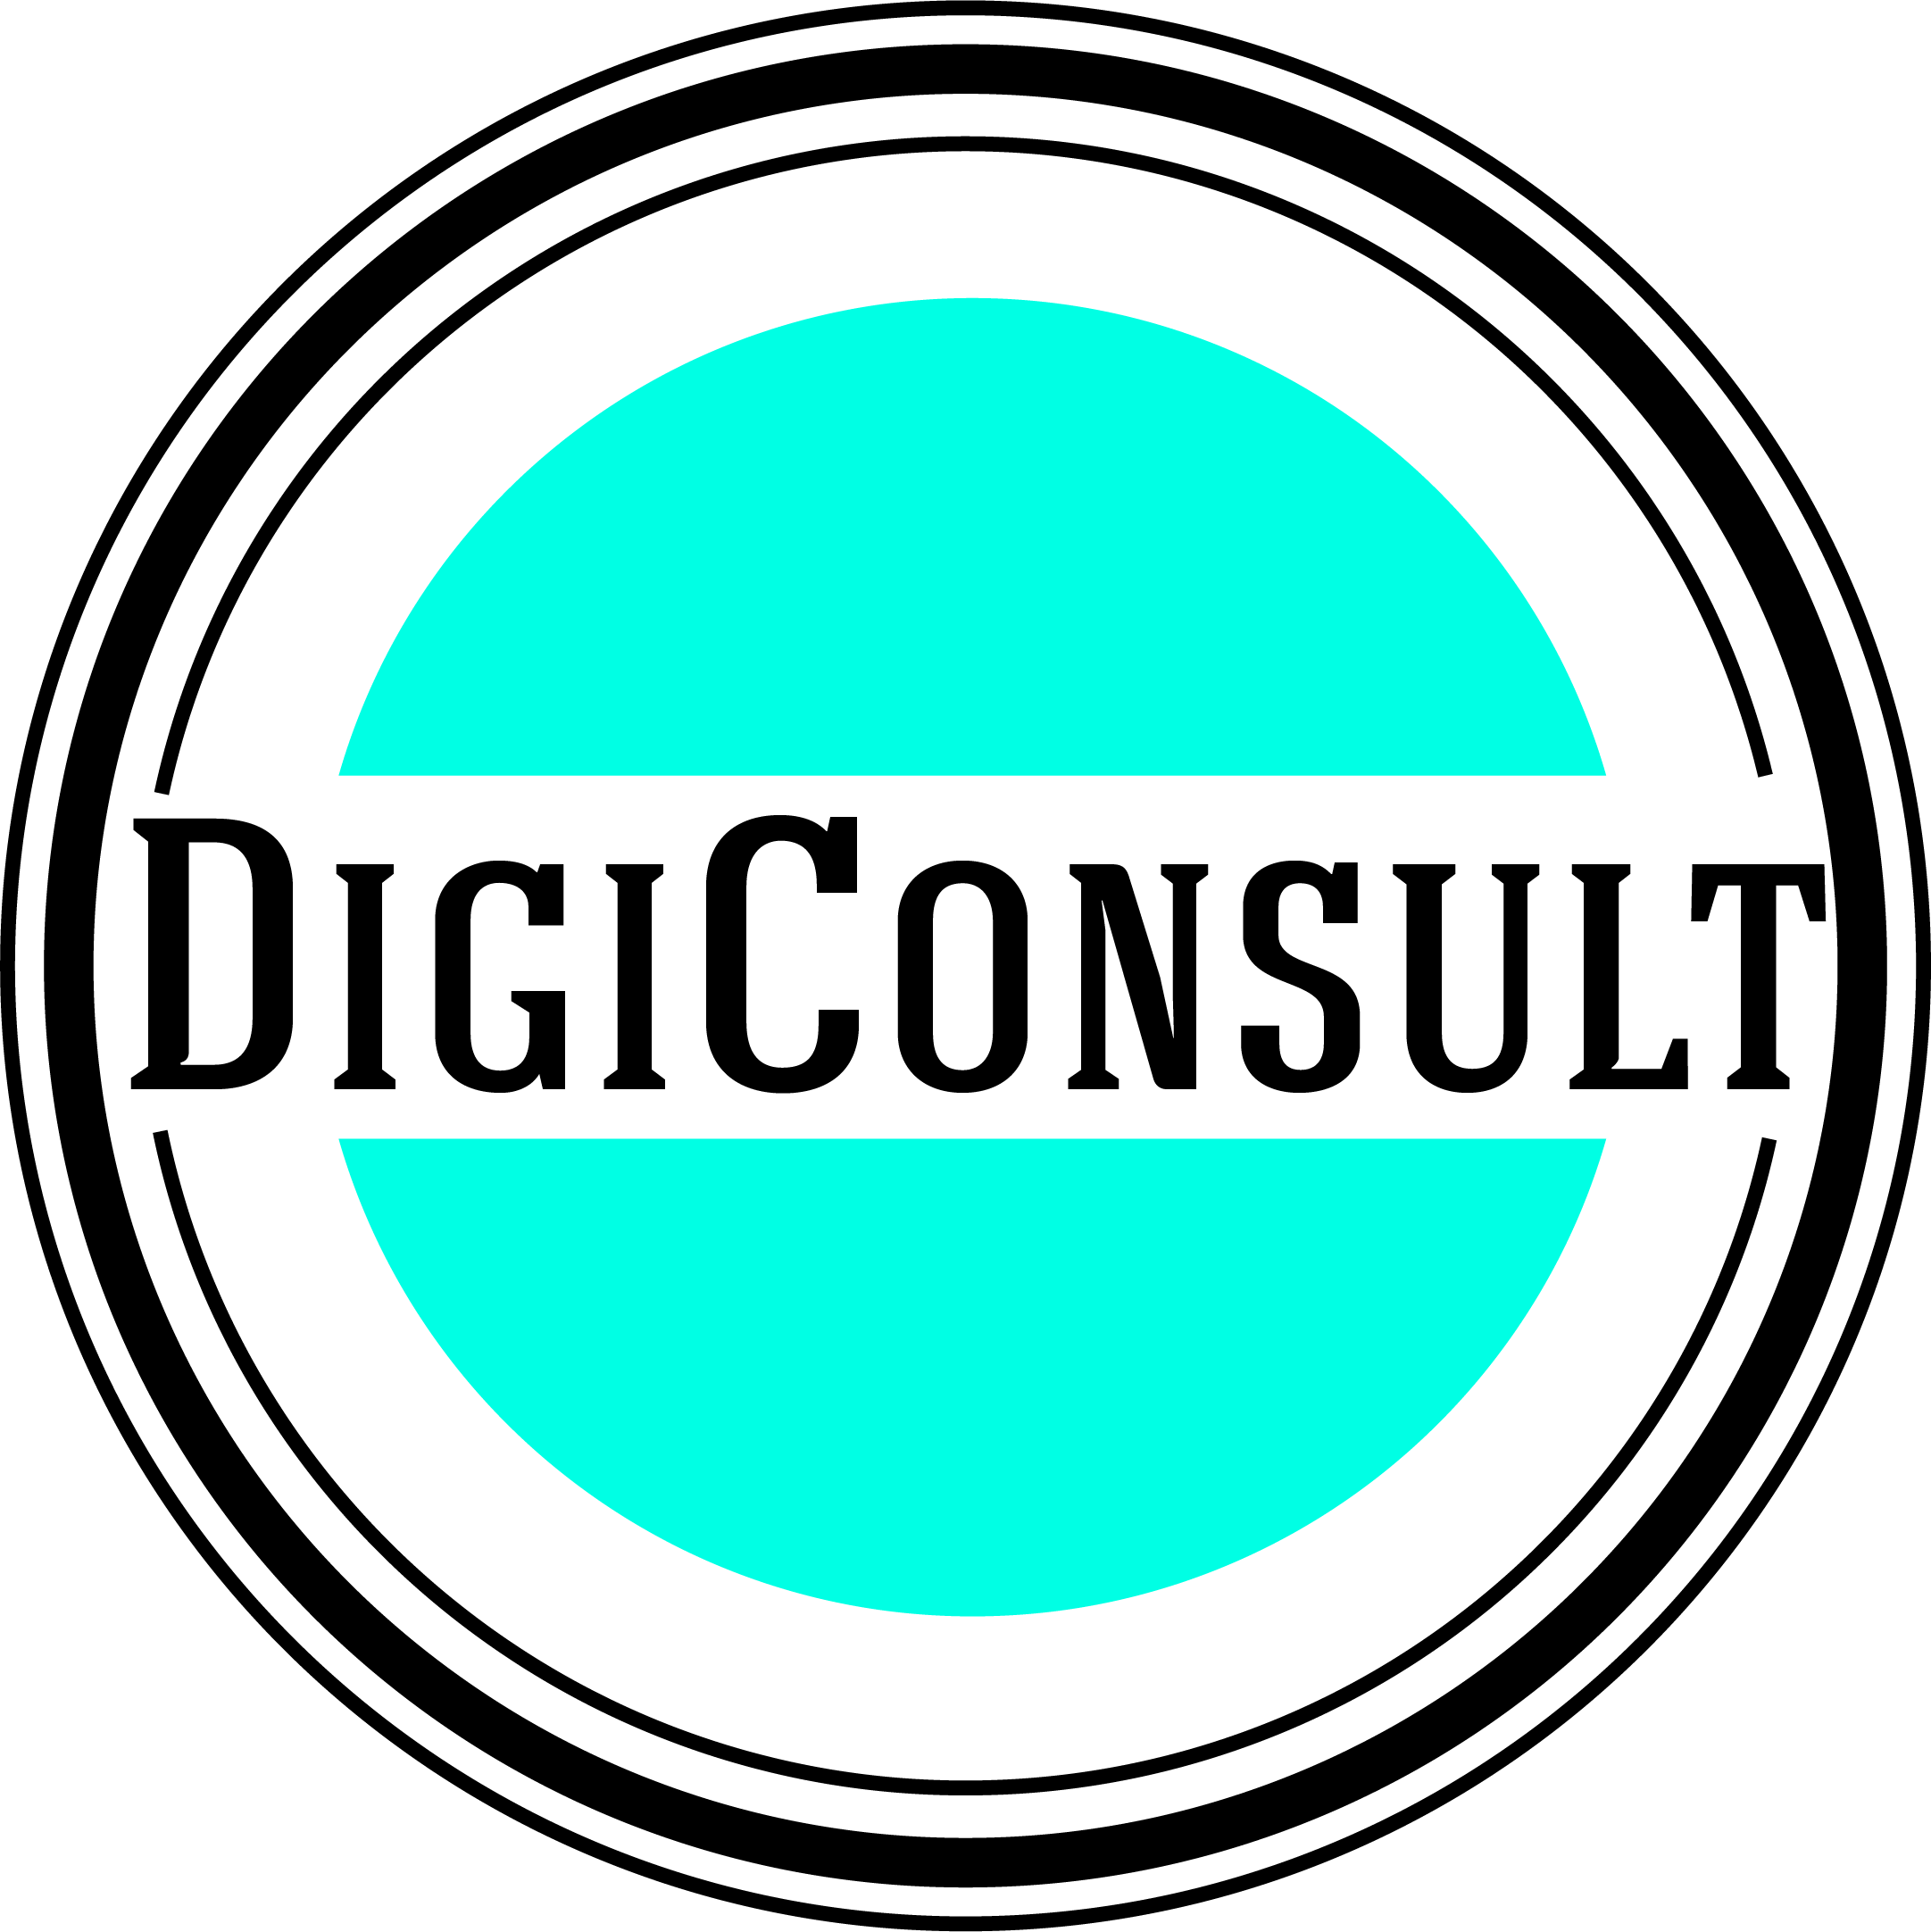 DigiConsult logo